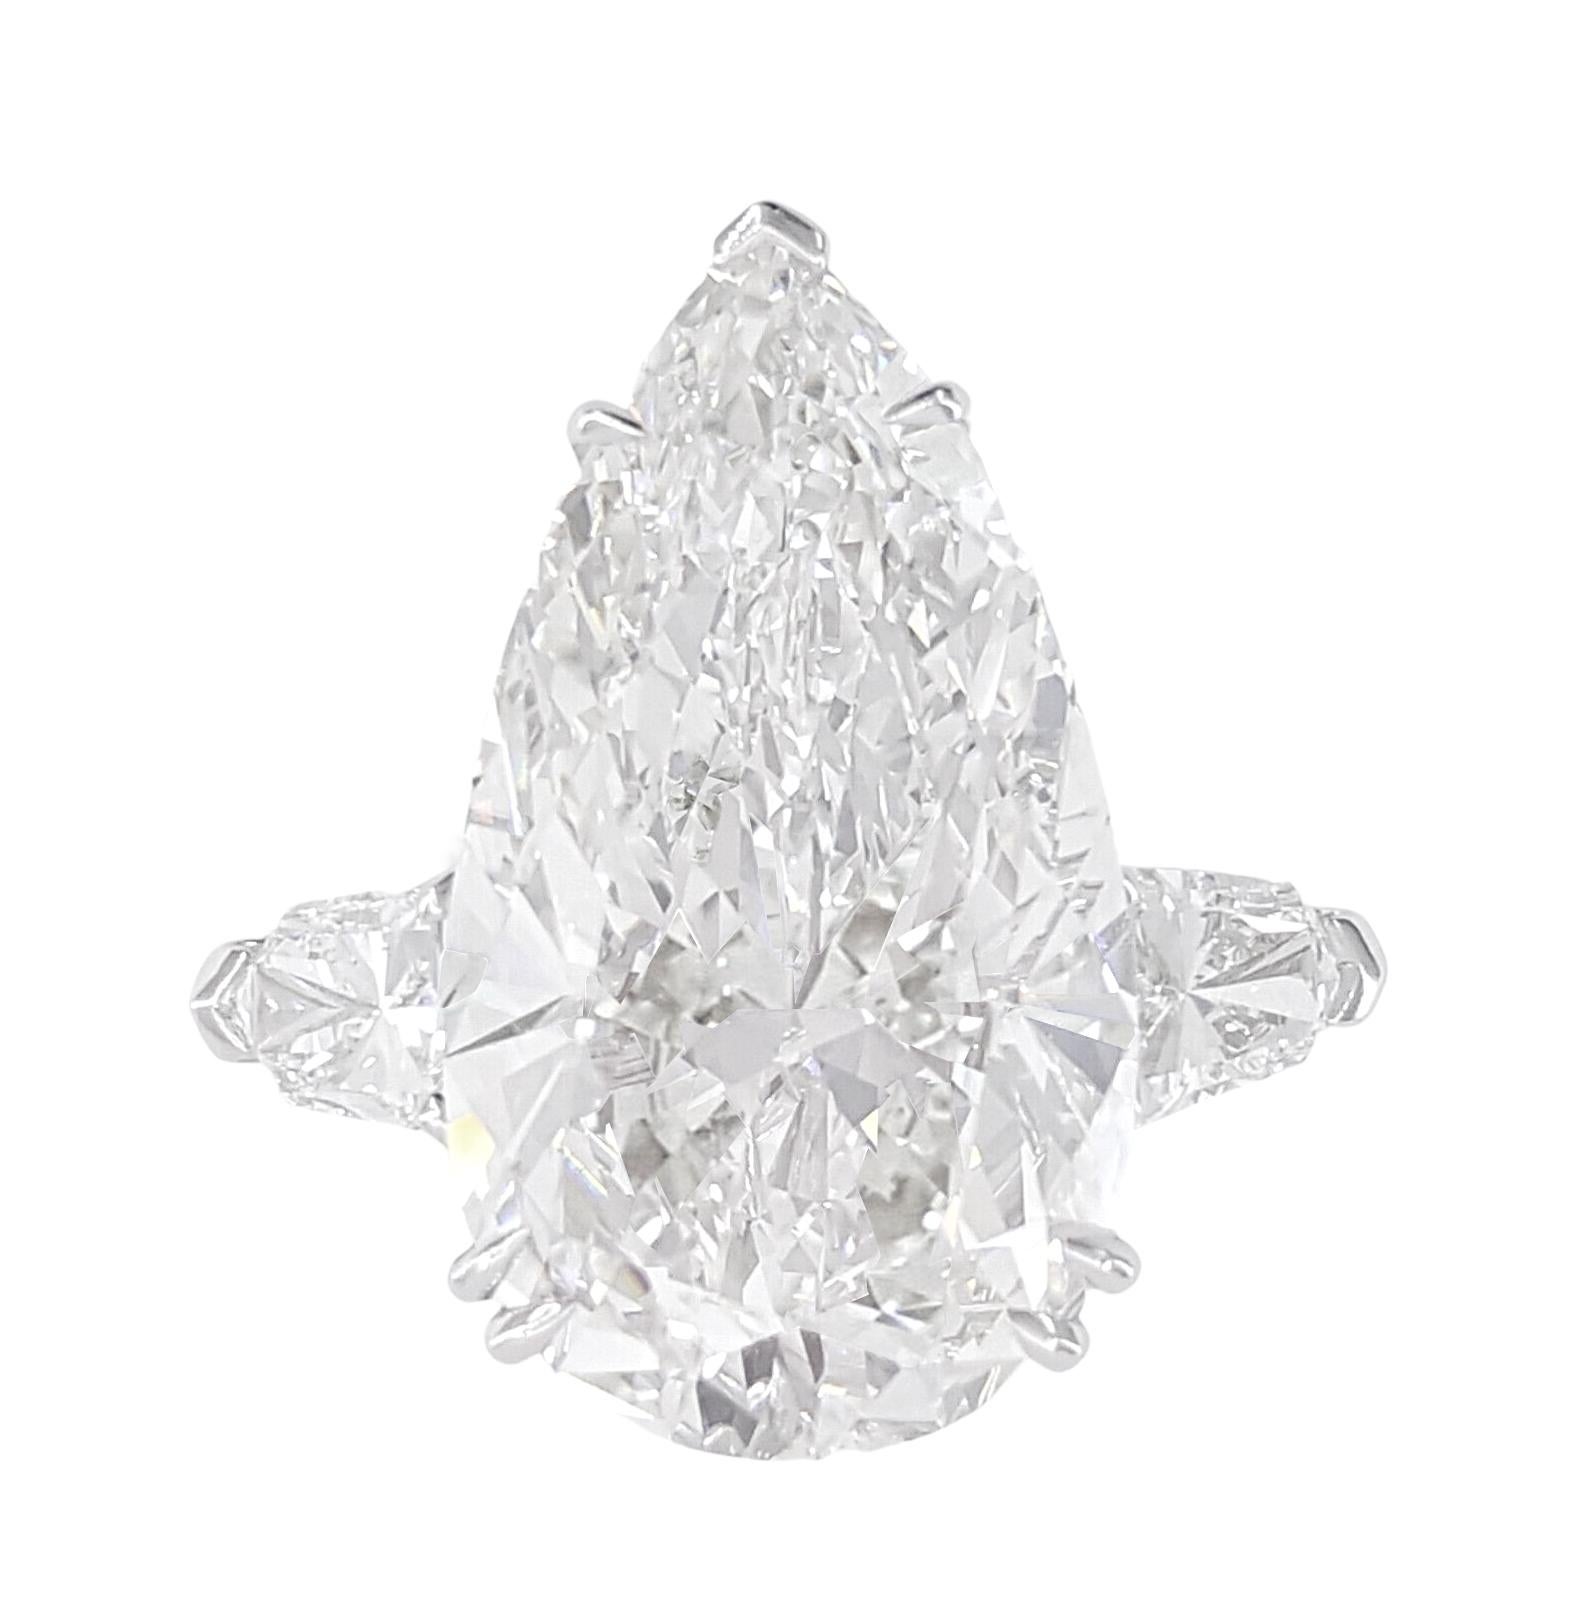 exquise bague en diamant taille poire de 3,90 carats, véritable témoignage d'une élégance intemporelle et d'un savoir-faire inégalé. Chaque facette de cette gemme envoûtante a été méticuleusement inspectée et certifiée par le GIA, ce qui garantit